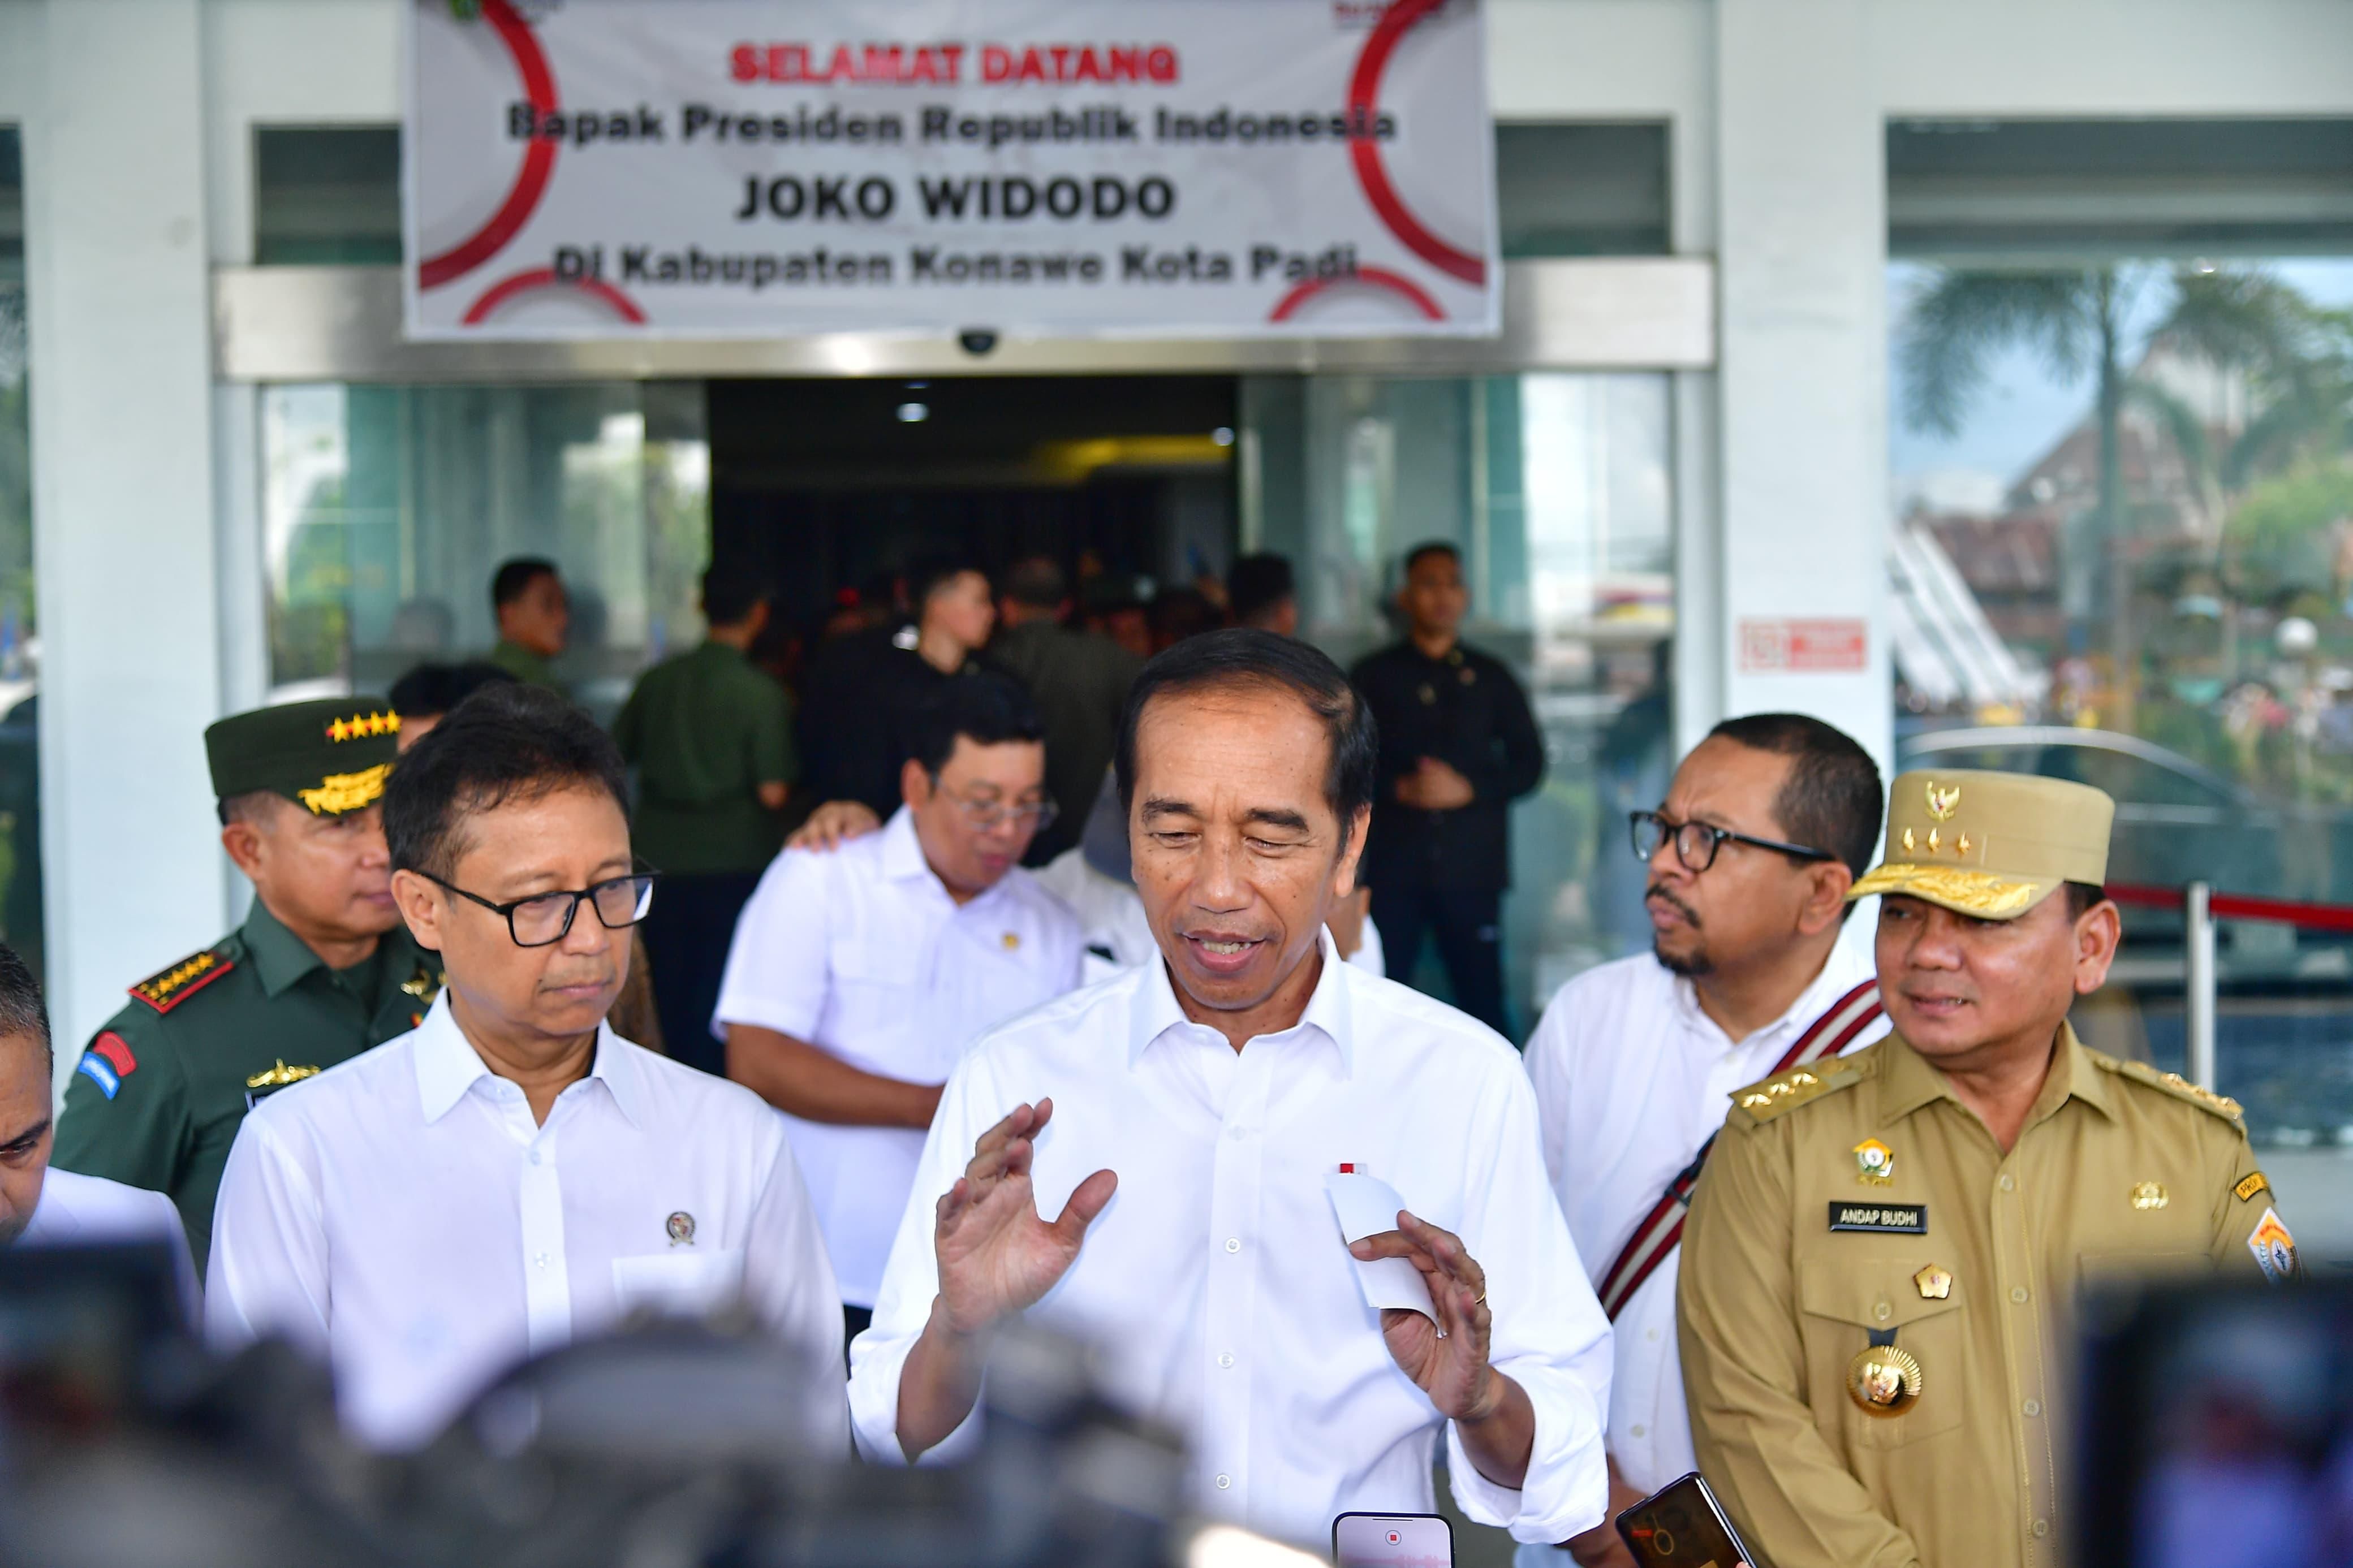 Disebut Bakal Jadi Dewan Pertimbangan Agung, Jokowi: Saya Masih Jadi Presiden sampai 6 Bulan Lagi, Lho